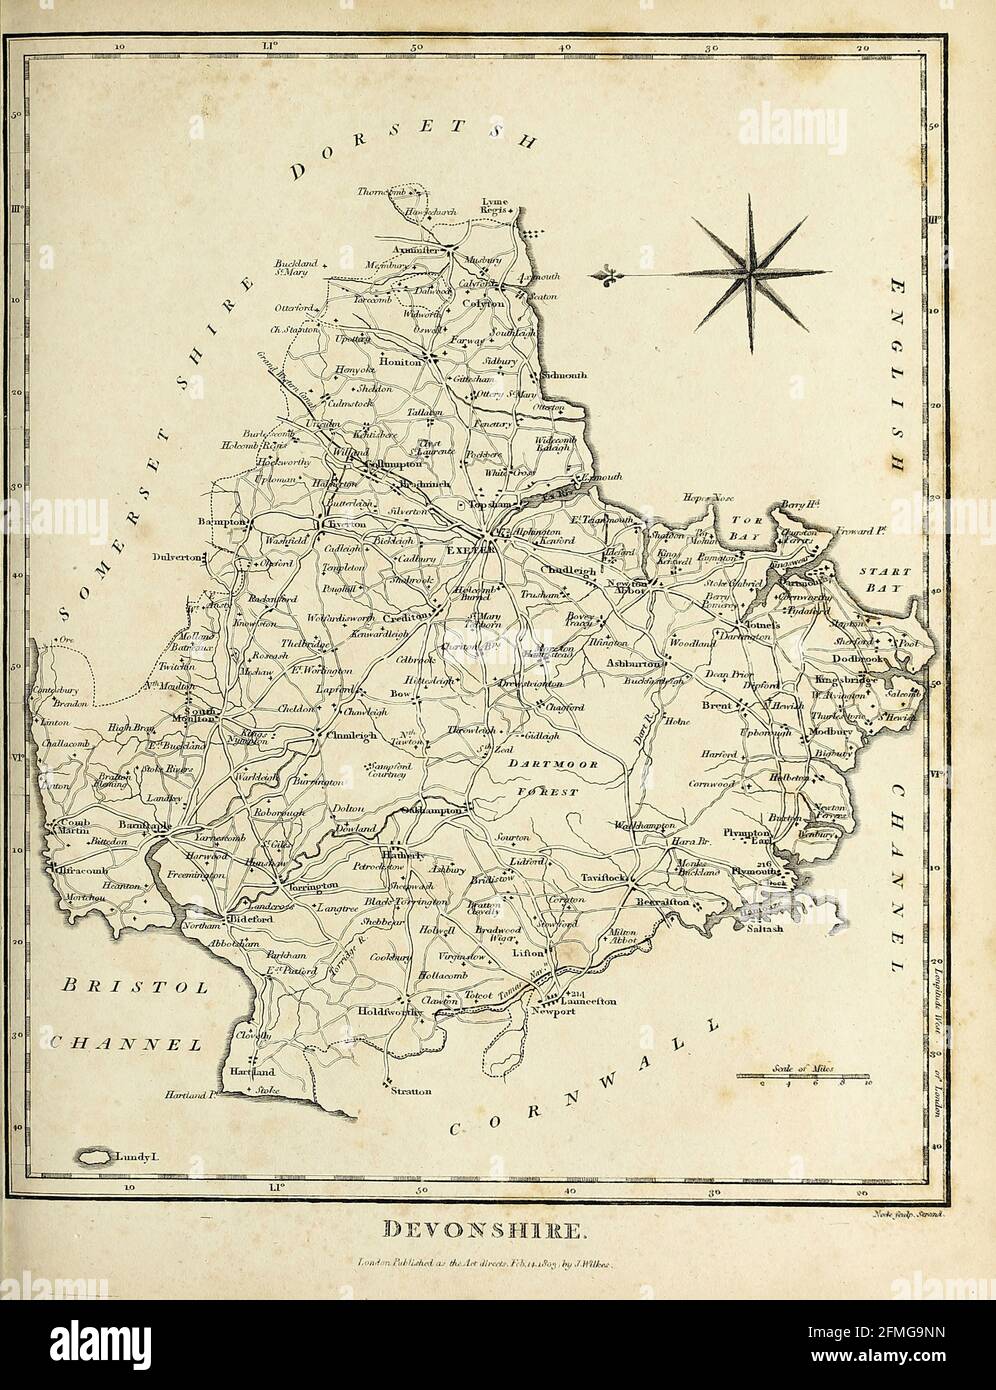 Devon (anche noto come Devonshire) è una contea dell'Inghilterra, che si estende dal canale di Bristol a nord fino alla Manica a sud. Fa parte dell'Inghilterra sud-occidentale, delimitata dalla Cornovaglia ad ovest, dal Somerset a nord-est e dal Dorset ad est. La città di Exeter è la città della contea. La contea comprende i distretti di East Devon, Mid Devon, North Devon, South Hams, Teignbridge, Torridge e West Devon. Plymouth e Torbay sono ciascuno geograficamente parte del Devon, ma sono amministrati come autorità unitarie.[incisione Copperplate dall'Enciclopedia Londinensis o, Universal dict Foto Stock